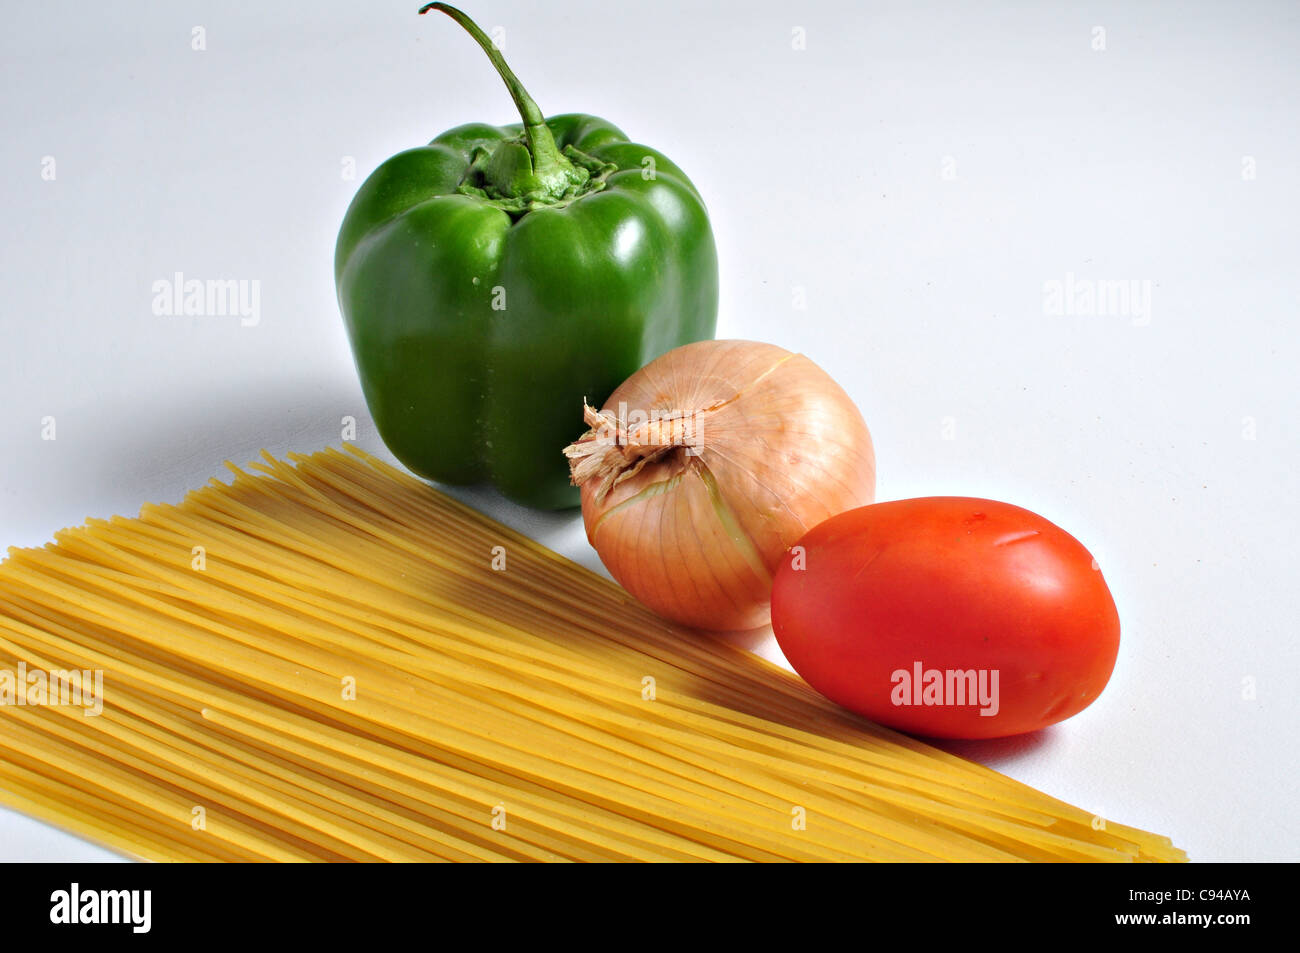 Gli spaghetti, pepe. cipolla e pomodoro sono in attesa su uno sfondo semplice per essere combinati in un pasto abbondante. Foto Stock